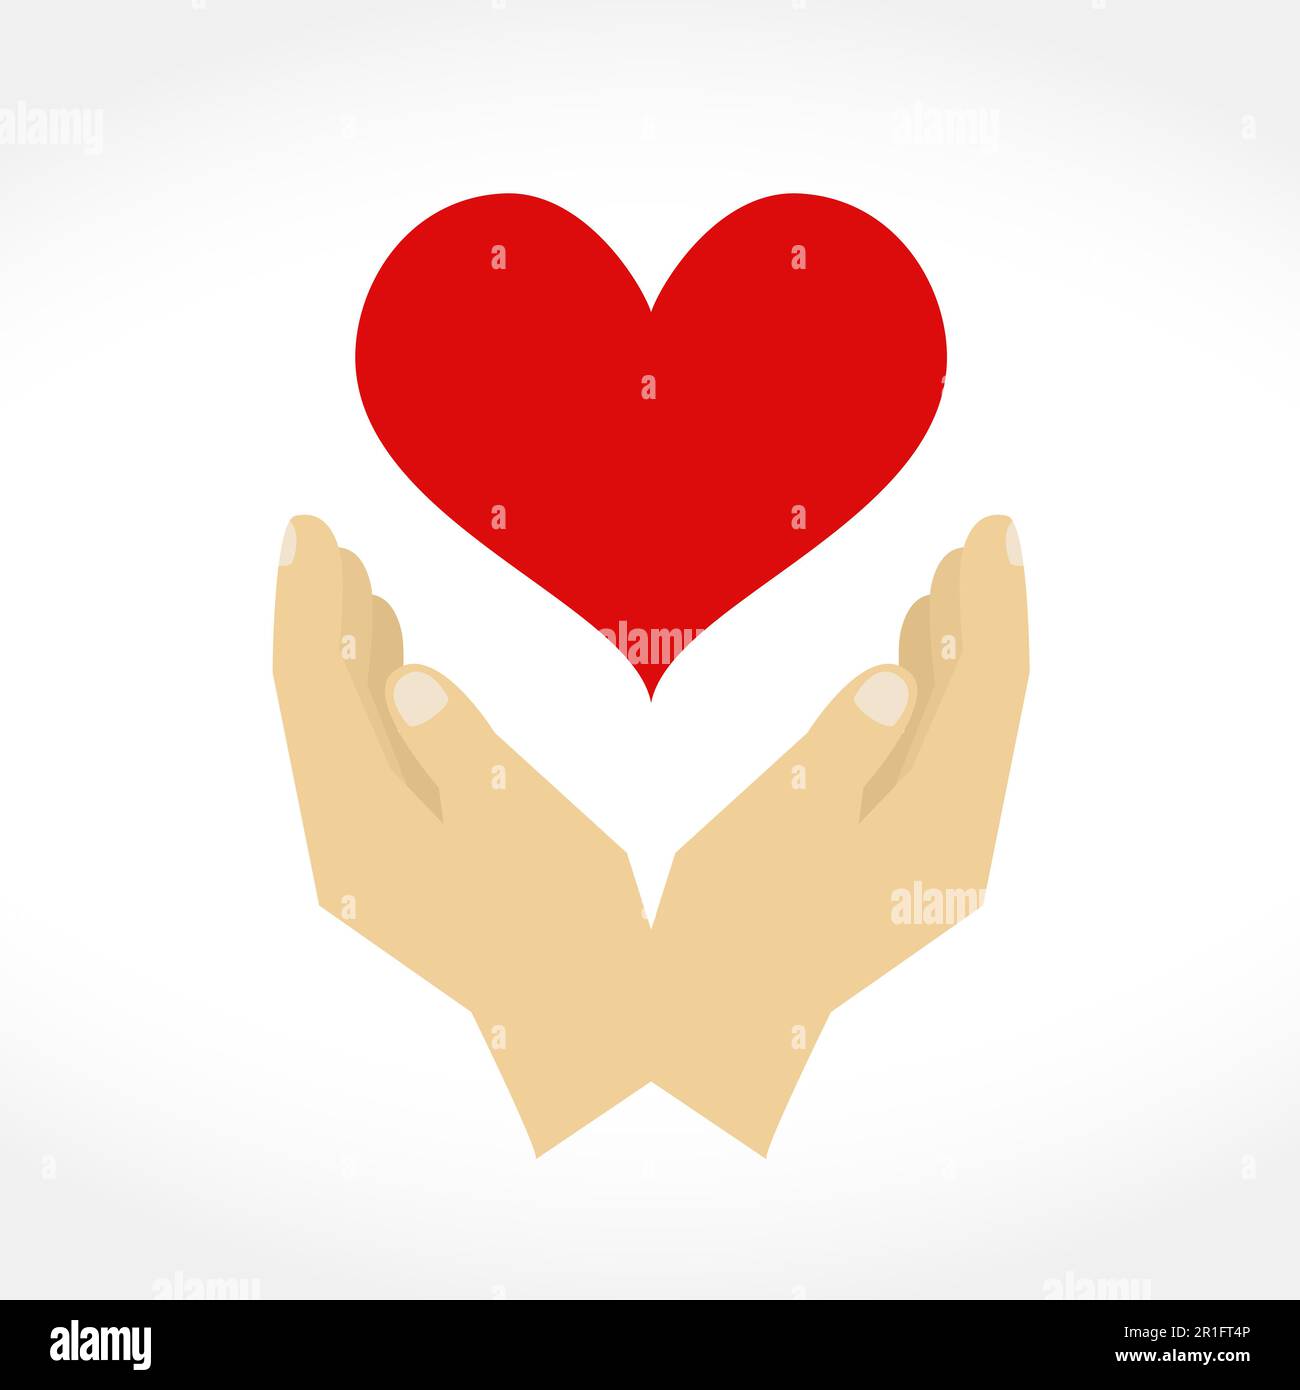 Hände mit Herz, Designelemente für Ihr Logo, flaches Design, Vektor-EPS10-Illustration Stock Vektor